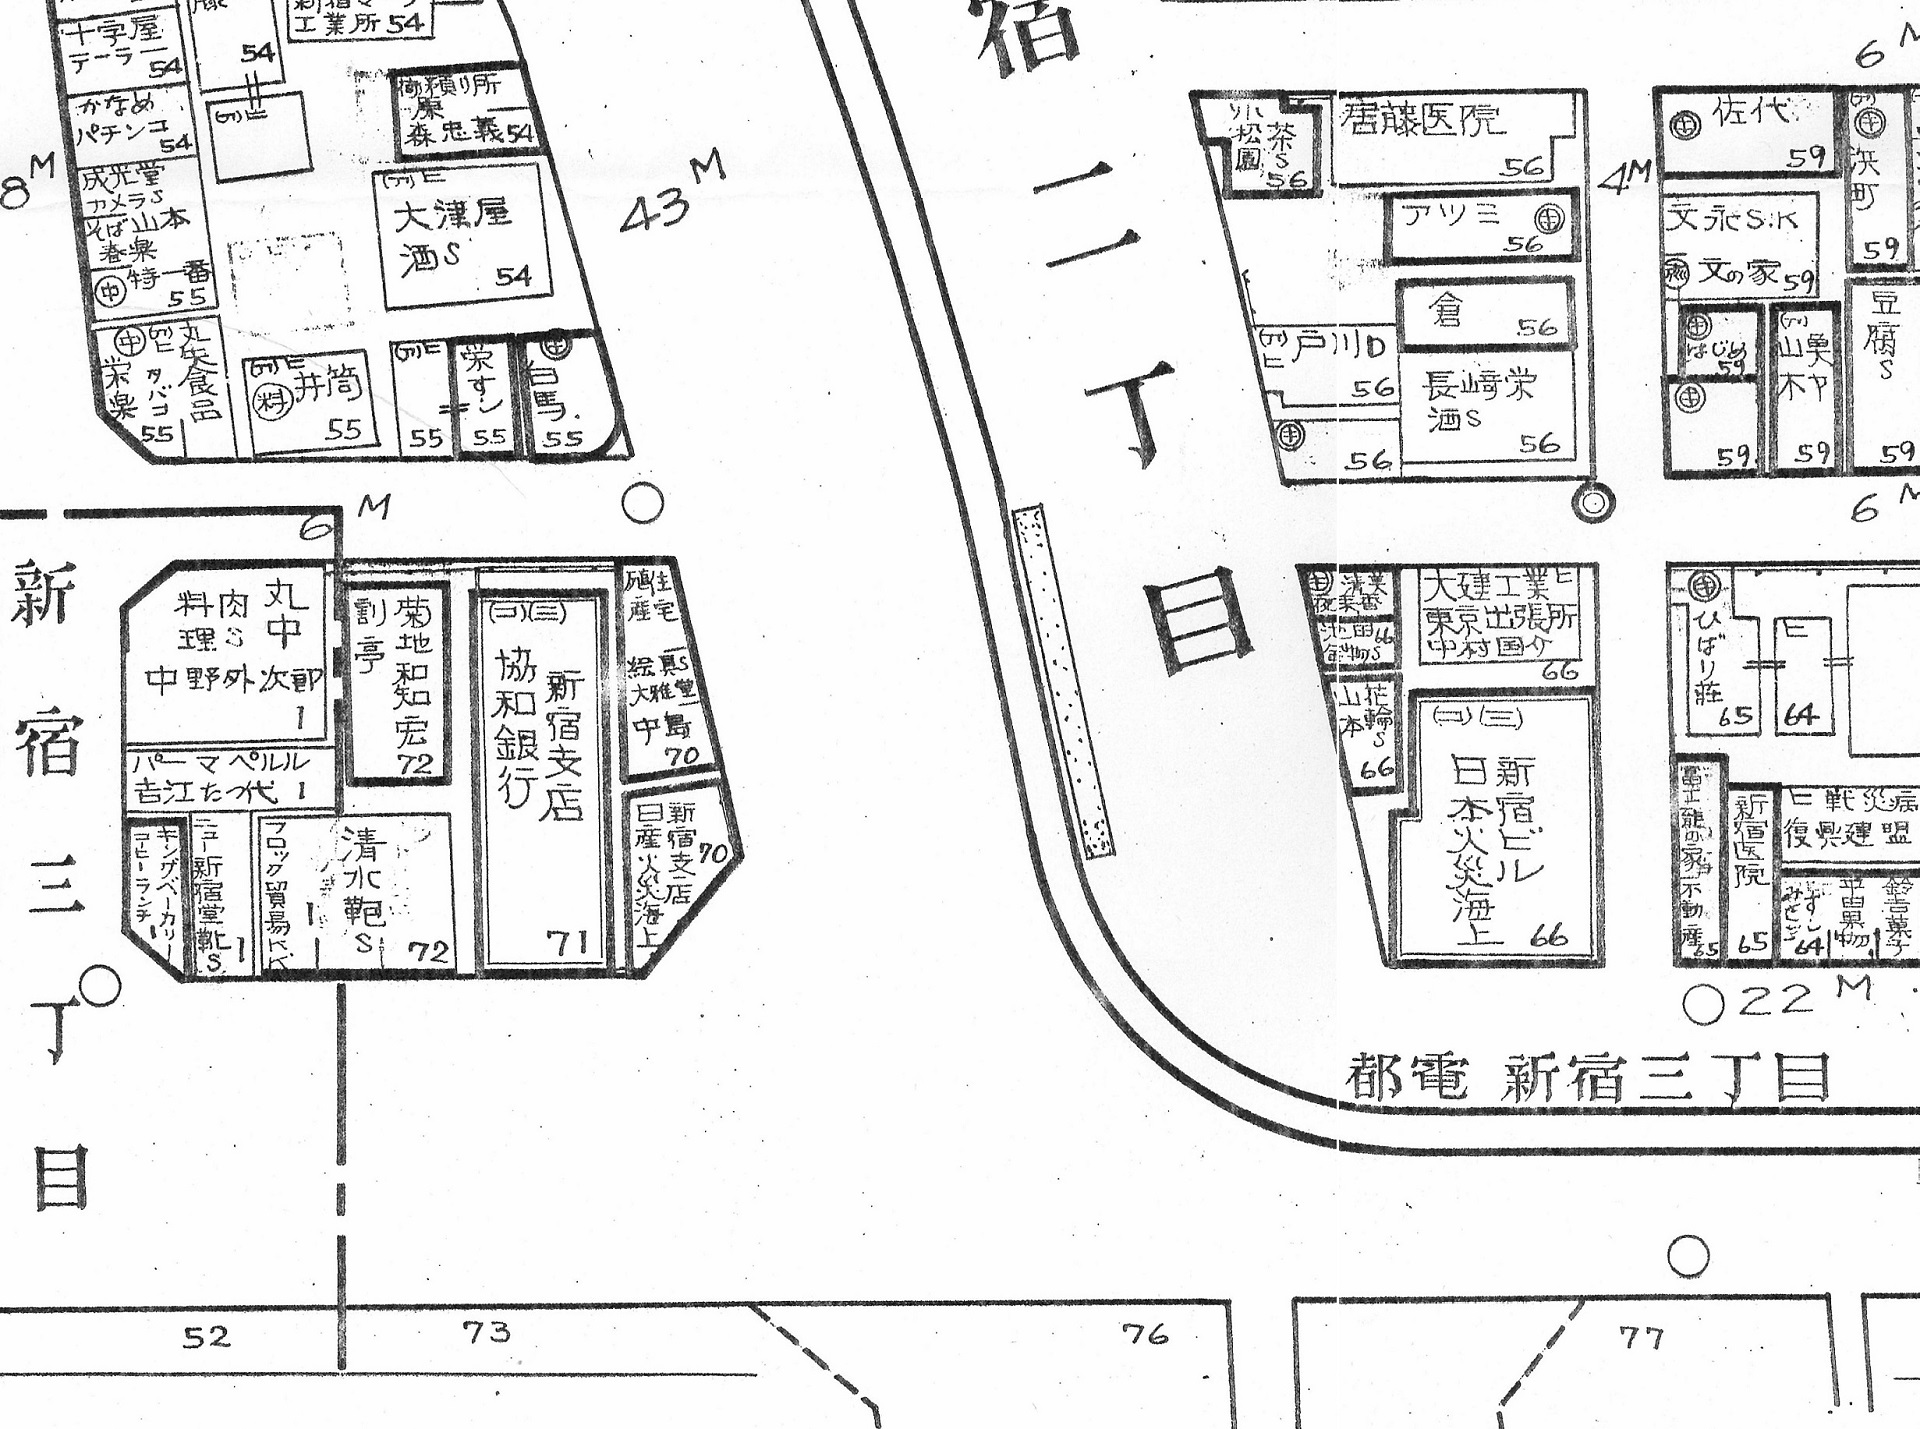 資料12Ｂ（一部を拡大）『新宿区 [4] 新宿通方面 1　１９５１年』東京都立中央図書館所蔵の画像